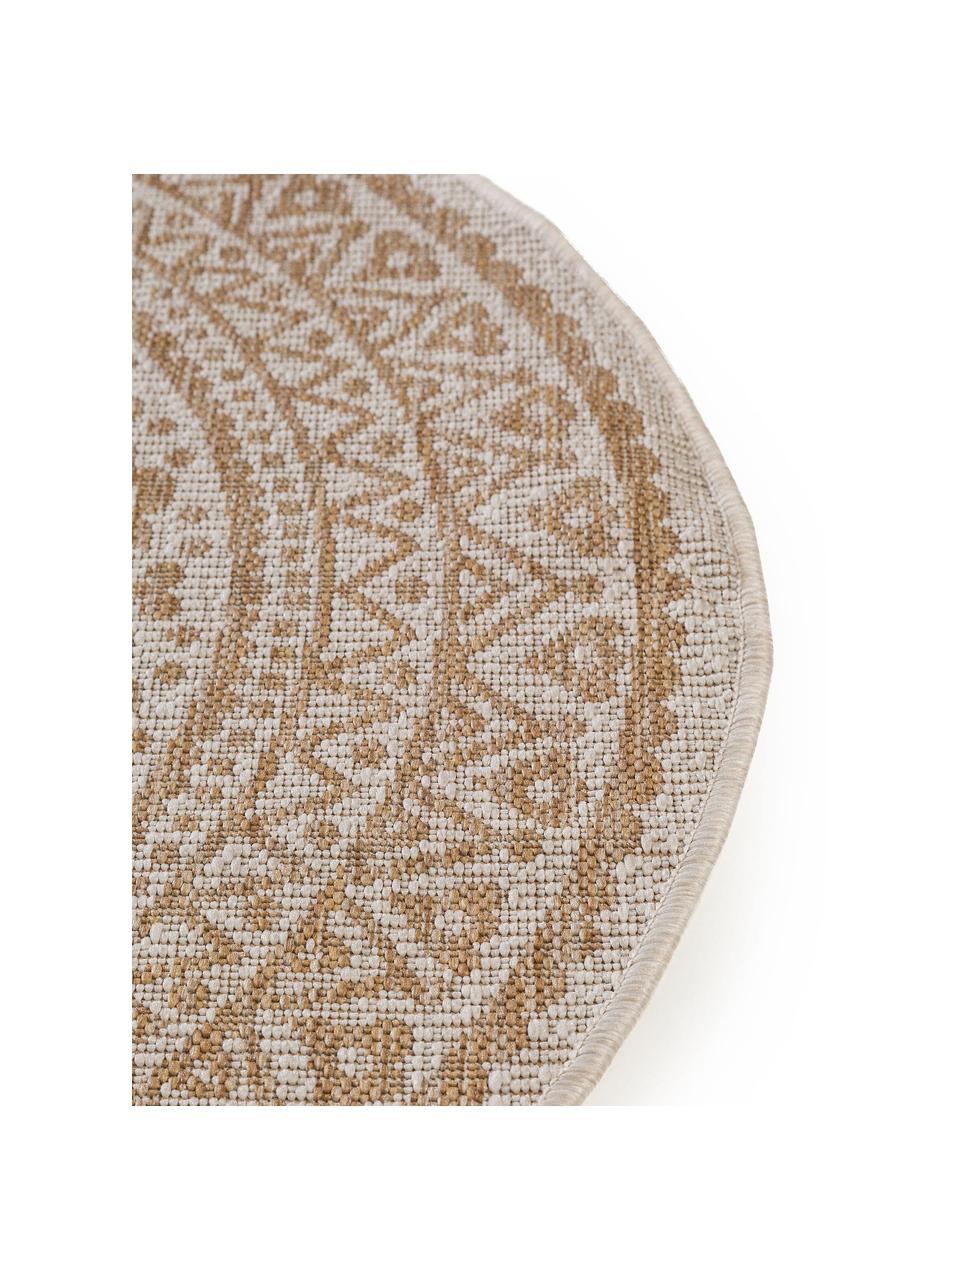 Okrągły dywan wewnętrzny/zewnętrzny Cleo, 90% polipropylen, 10% poliester, Beżowy, kremowy, Ø 150 cm (Rozmiar M)